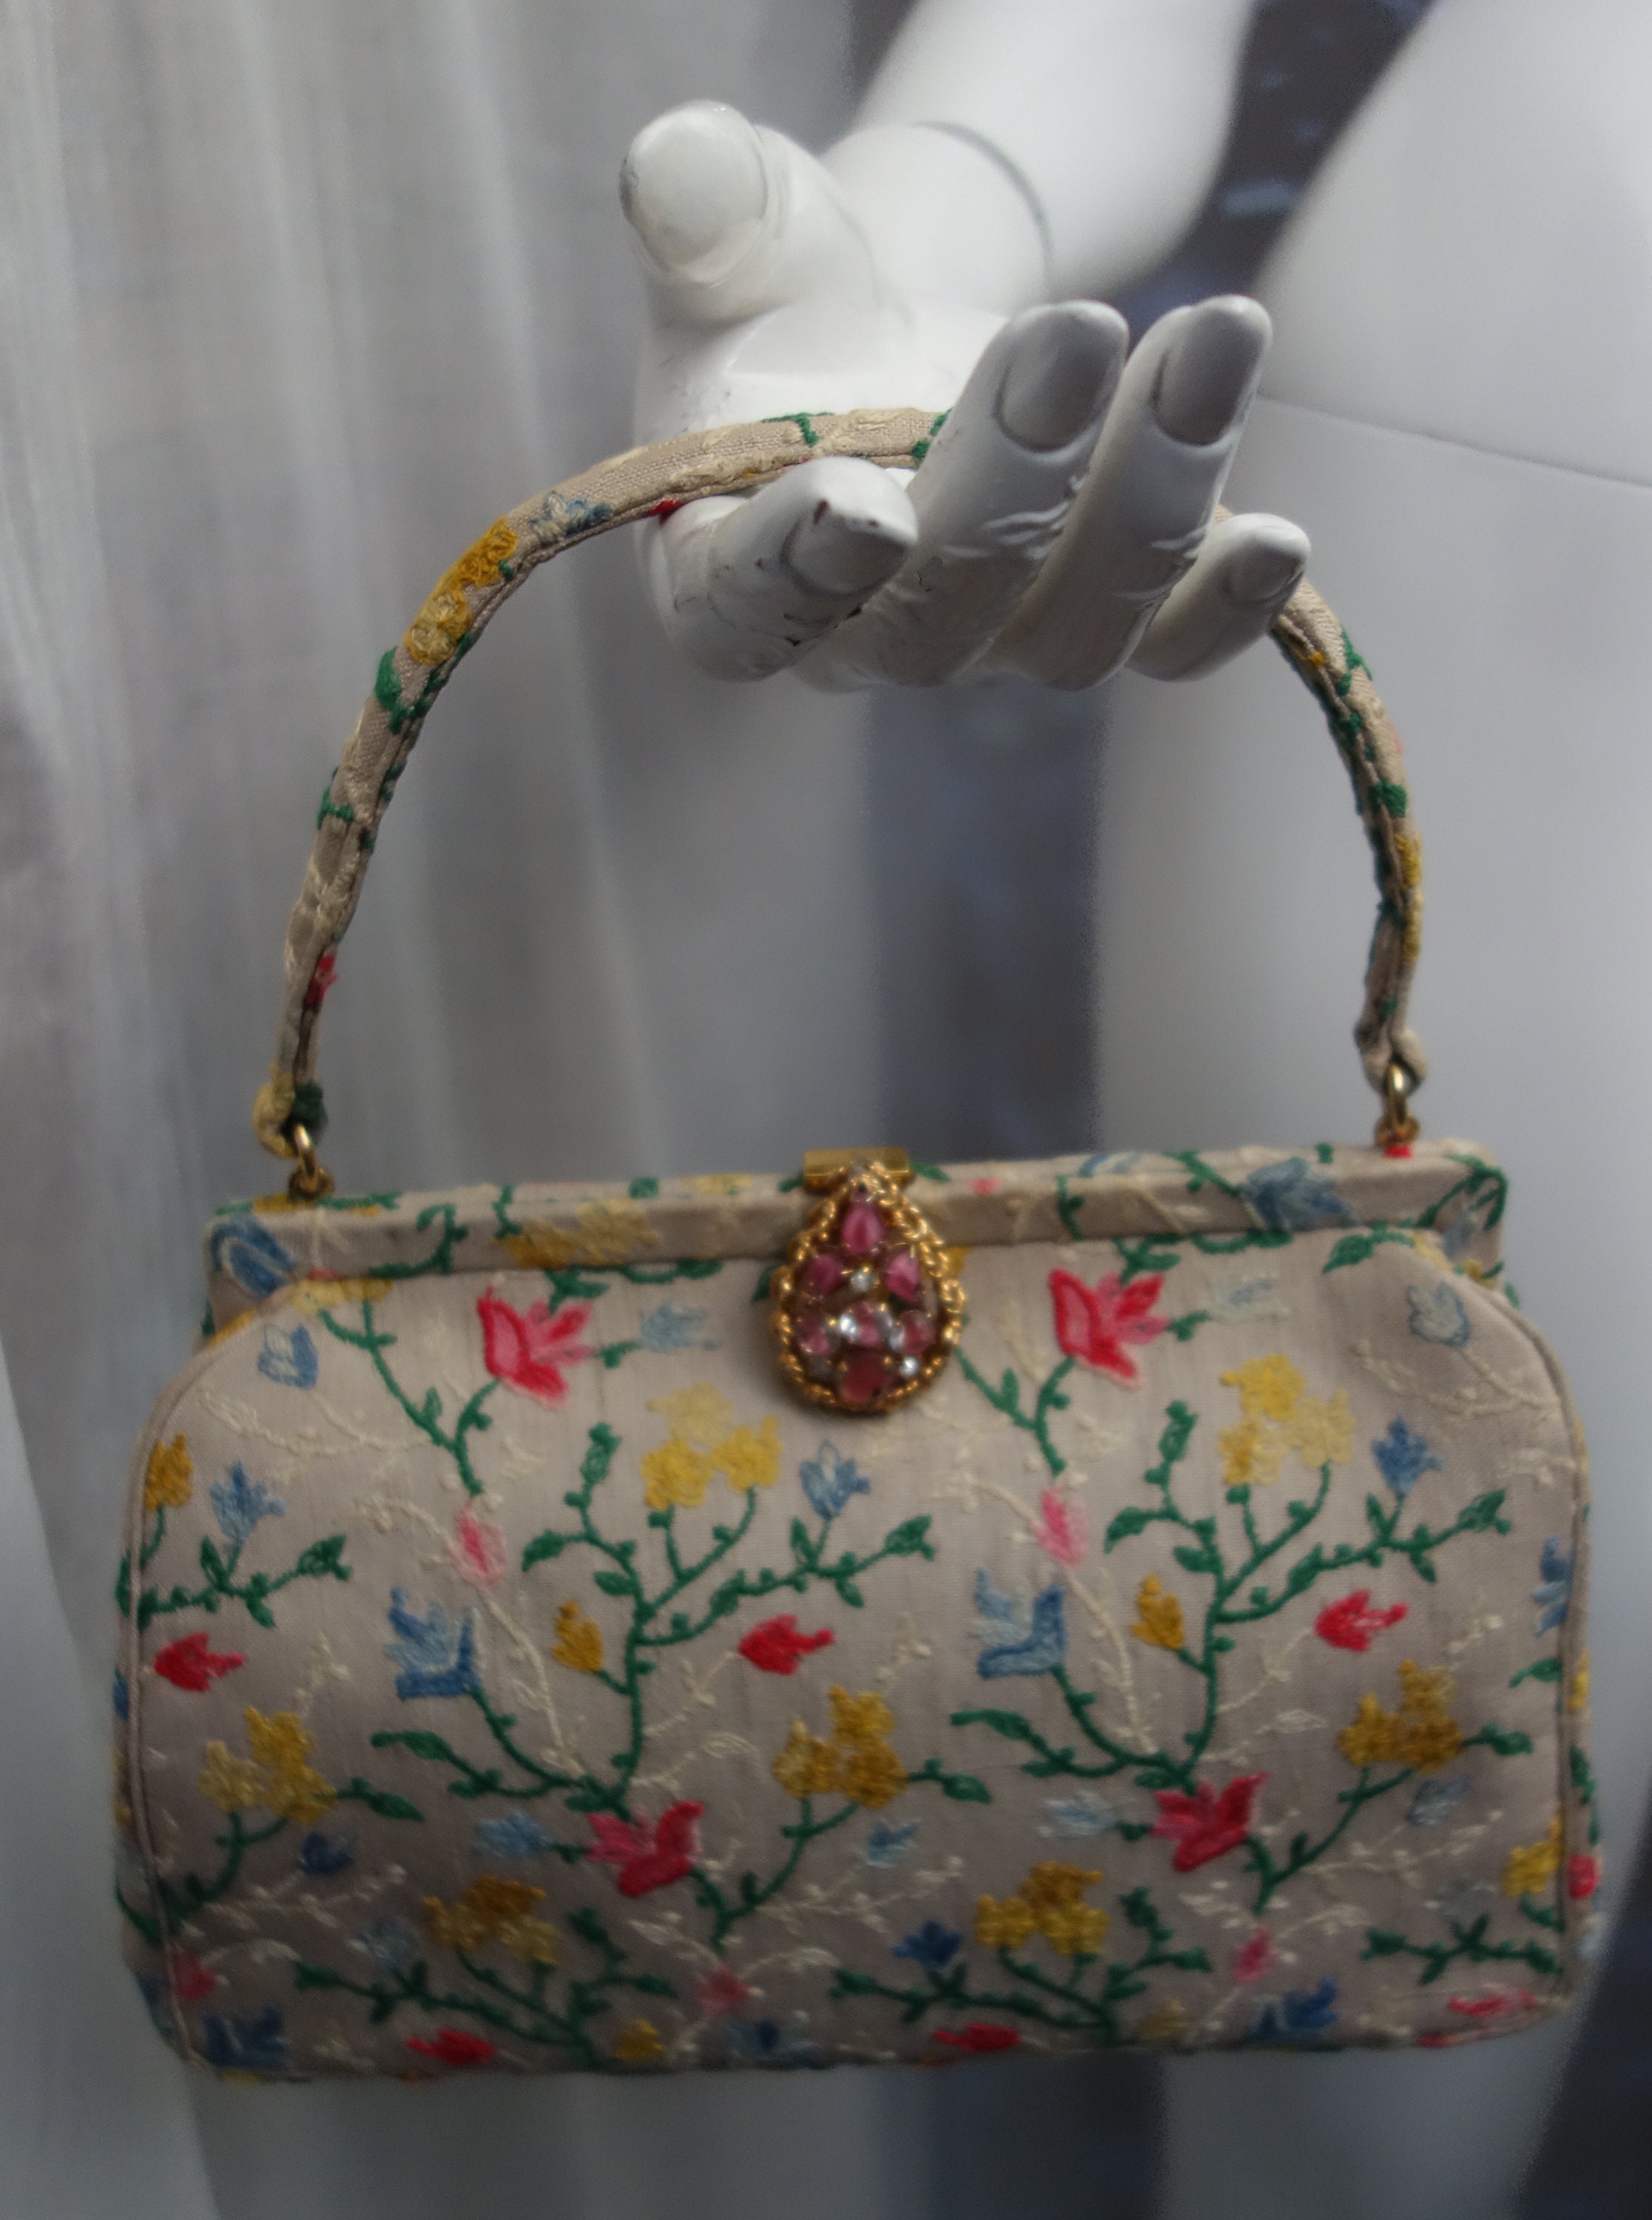 Koret Roses Frame Carpet Bag Rare 1960s Leather Interior Handbag